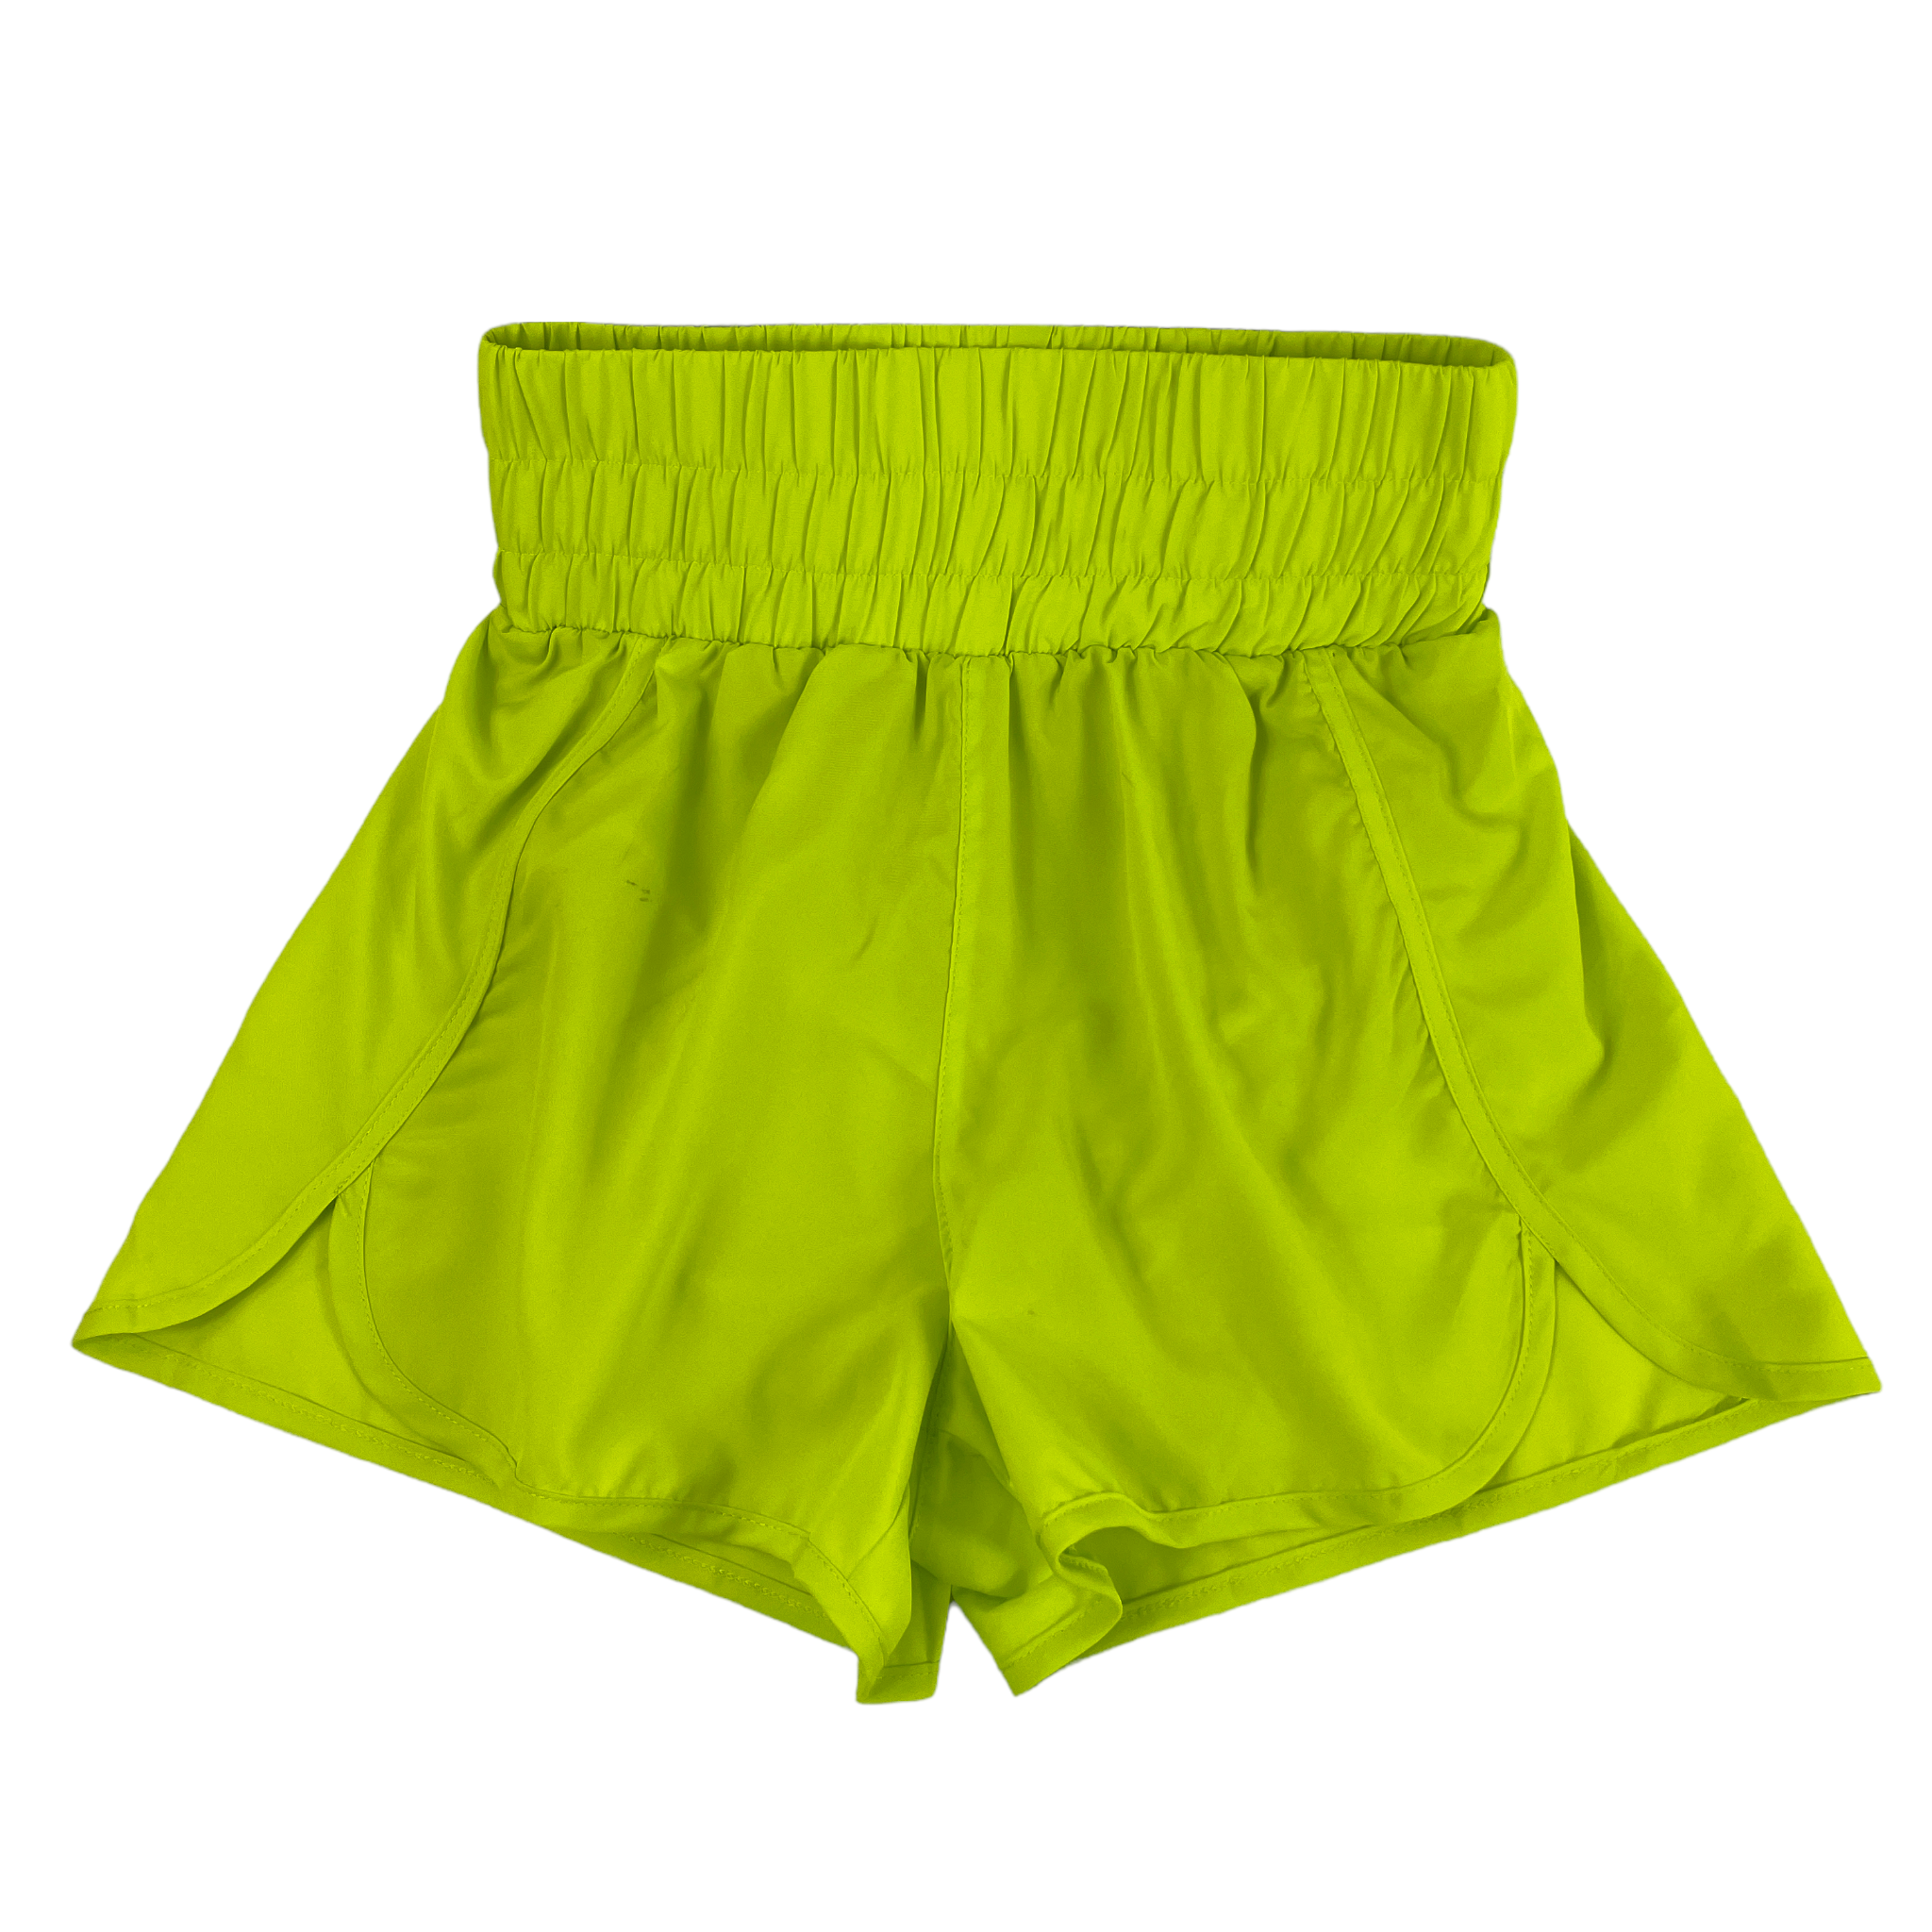 SH-0524 Elastic Waist Shorts Lime